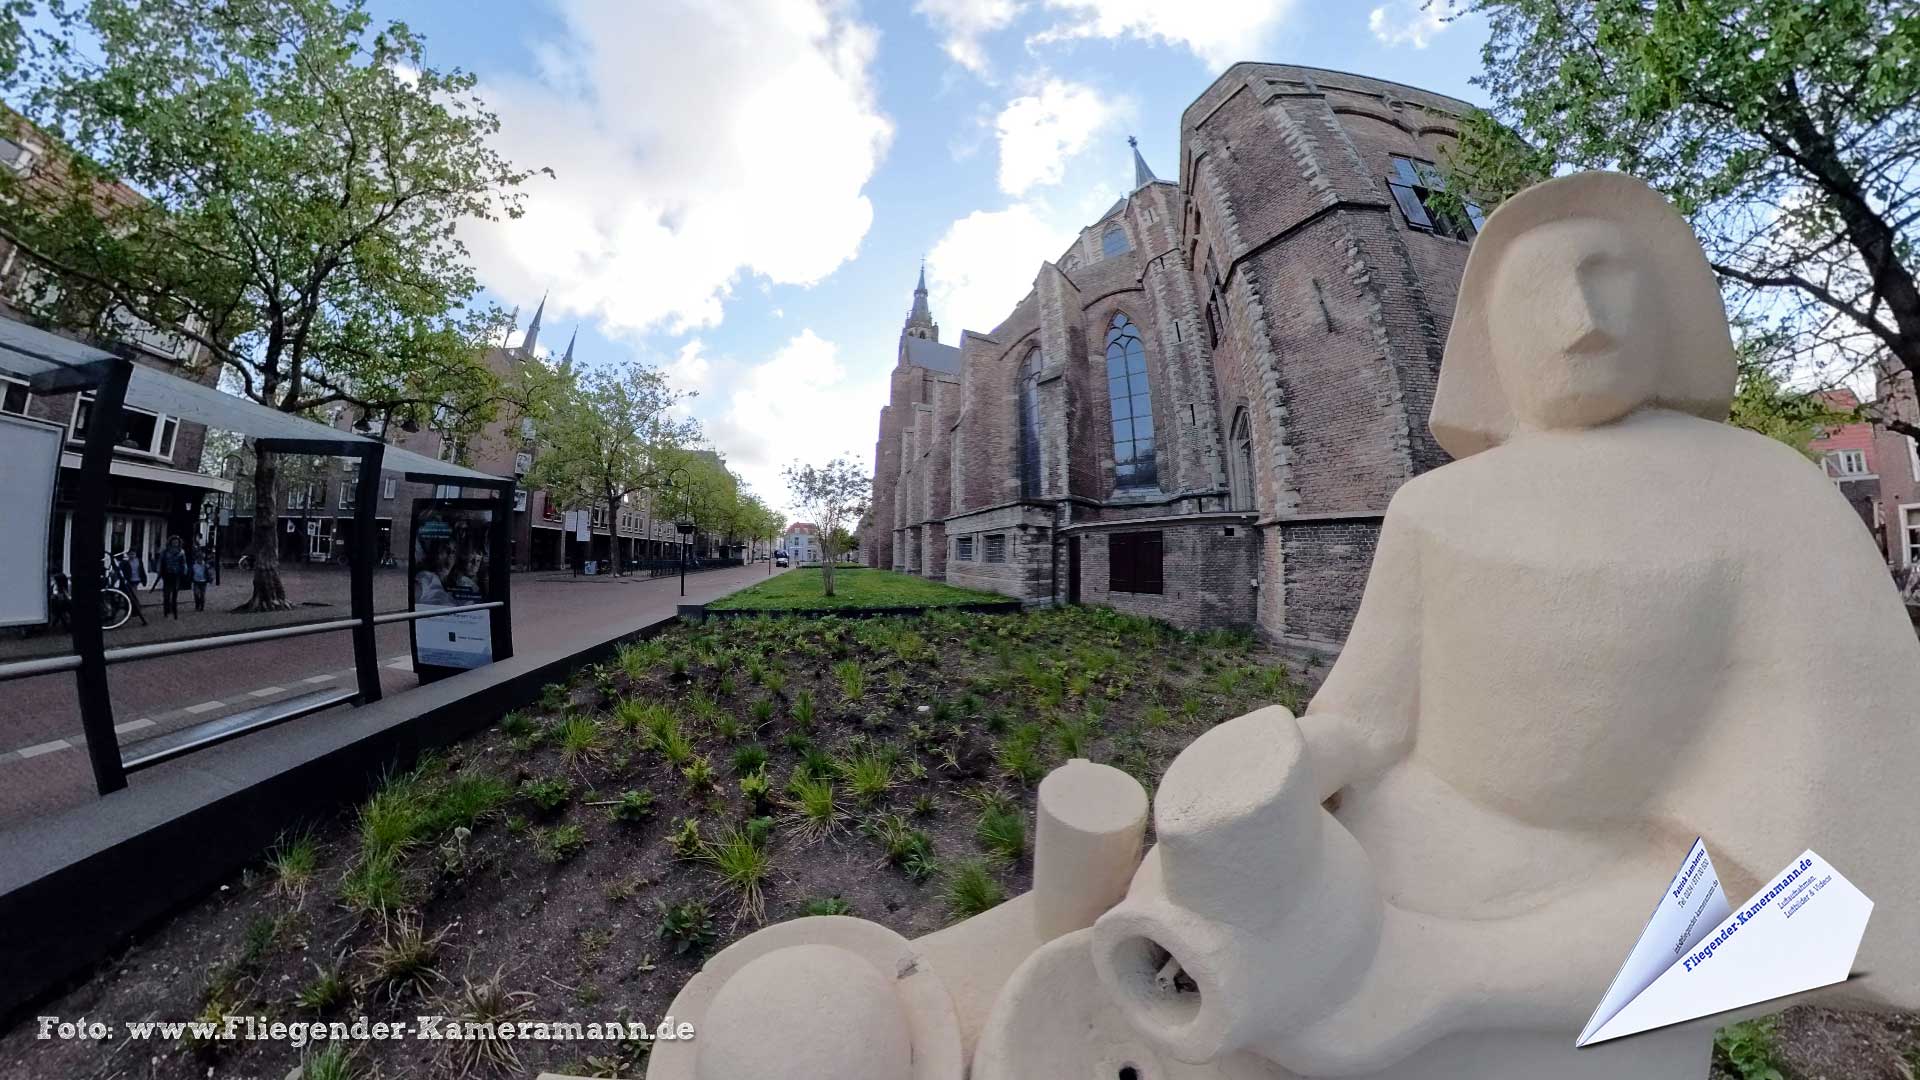 De nieuwe Kerk, Statue "Het Melkmeisje" in Delft (NL) - 360°-Panorama